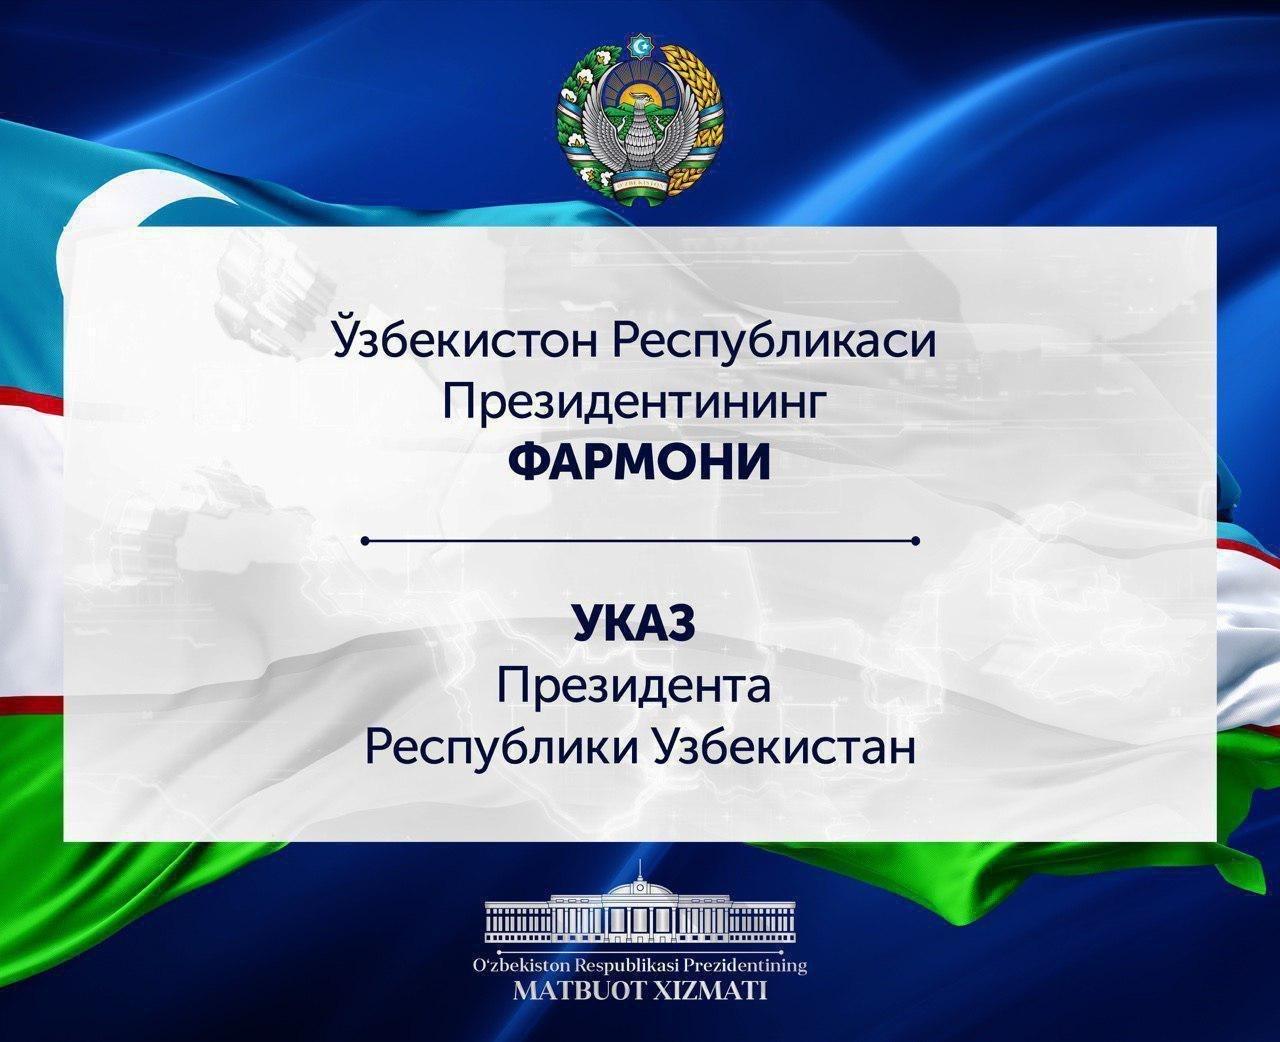 Об утверждении членов Кабинета Министров Республики Узбекистан